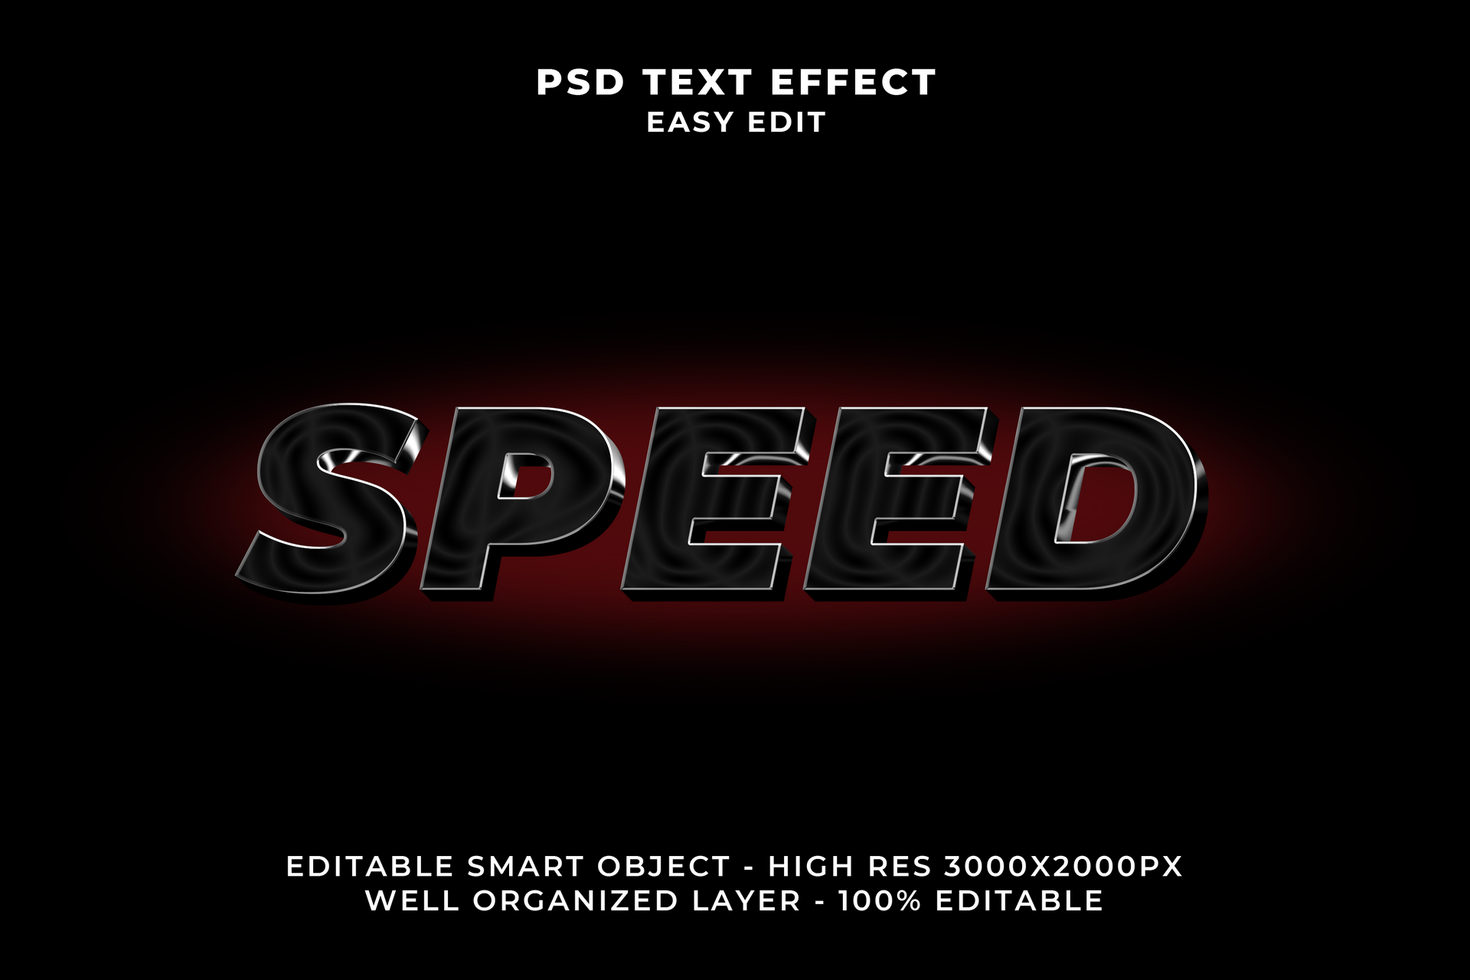 3d velocidad texto efecto psd